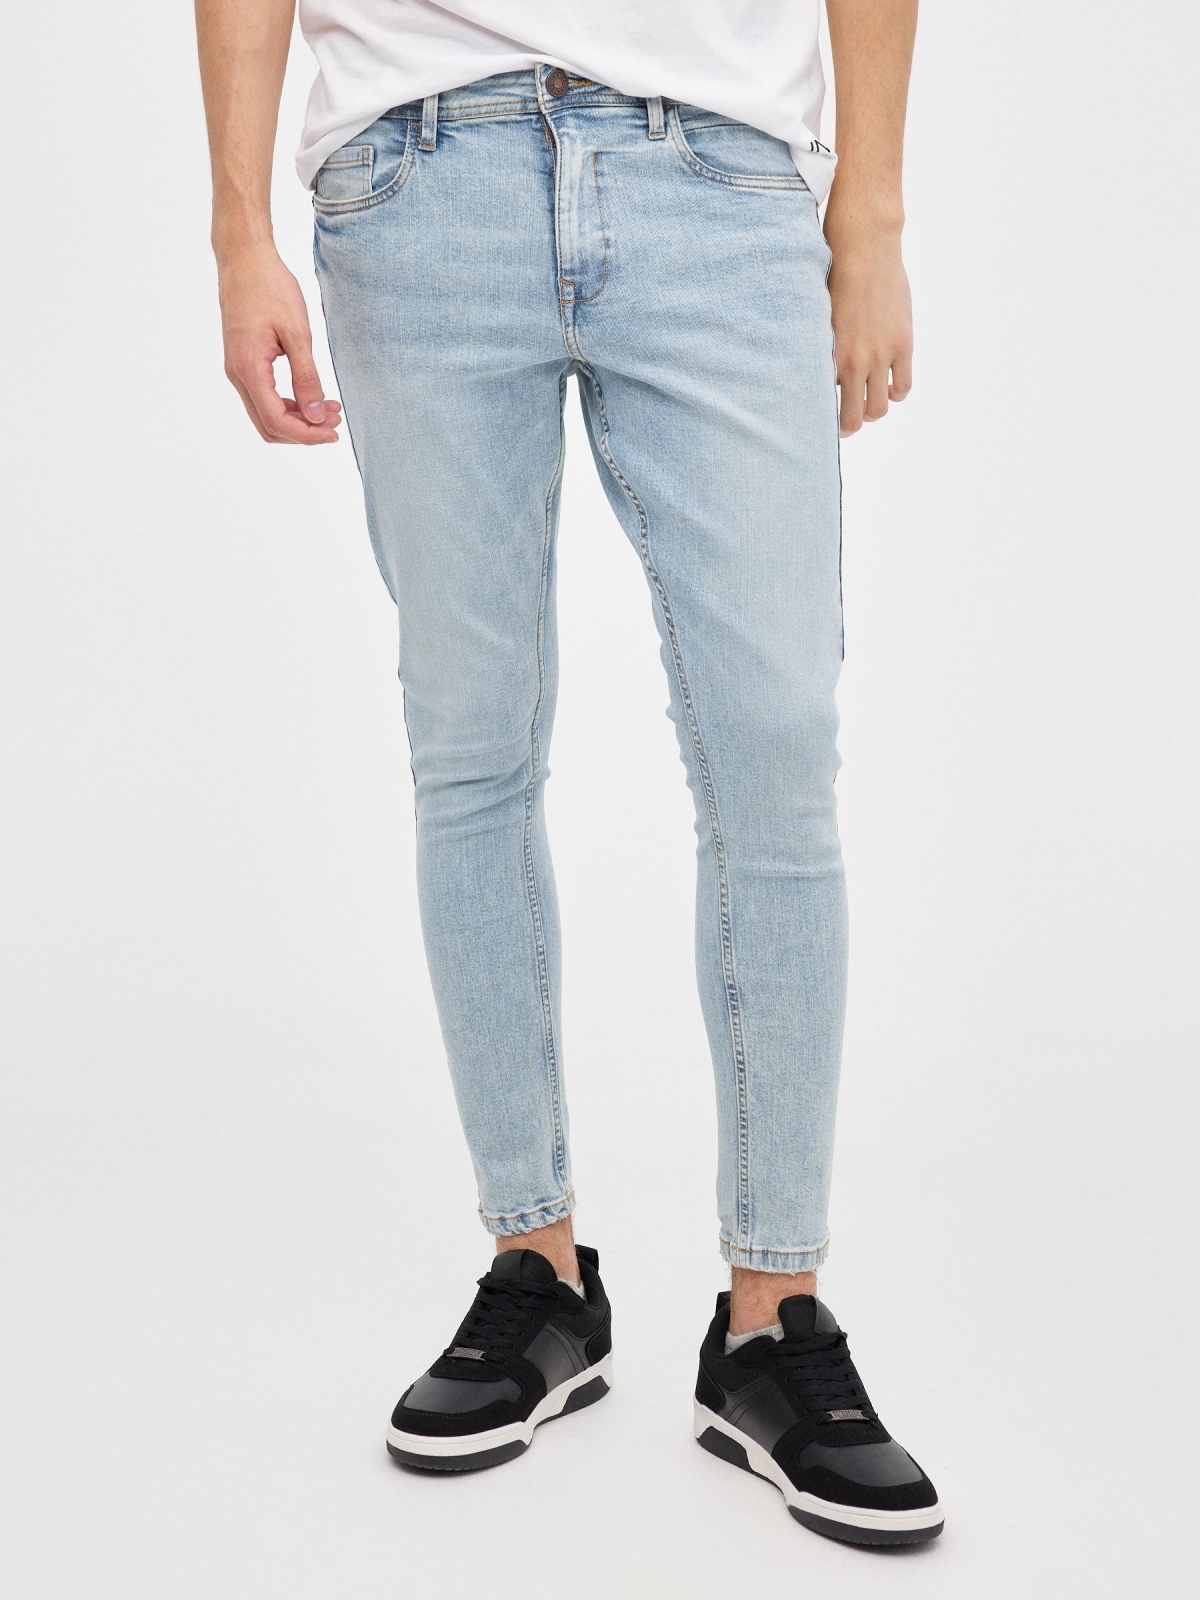 Jeans skinny denim claro azul vista media frontal